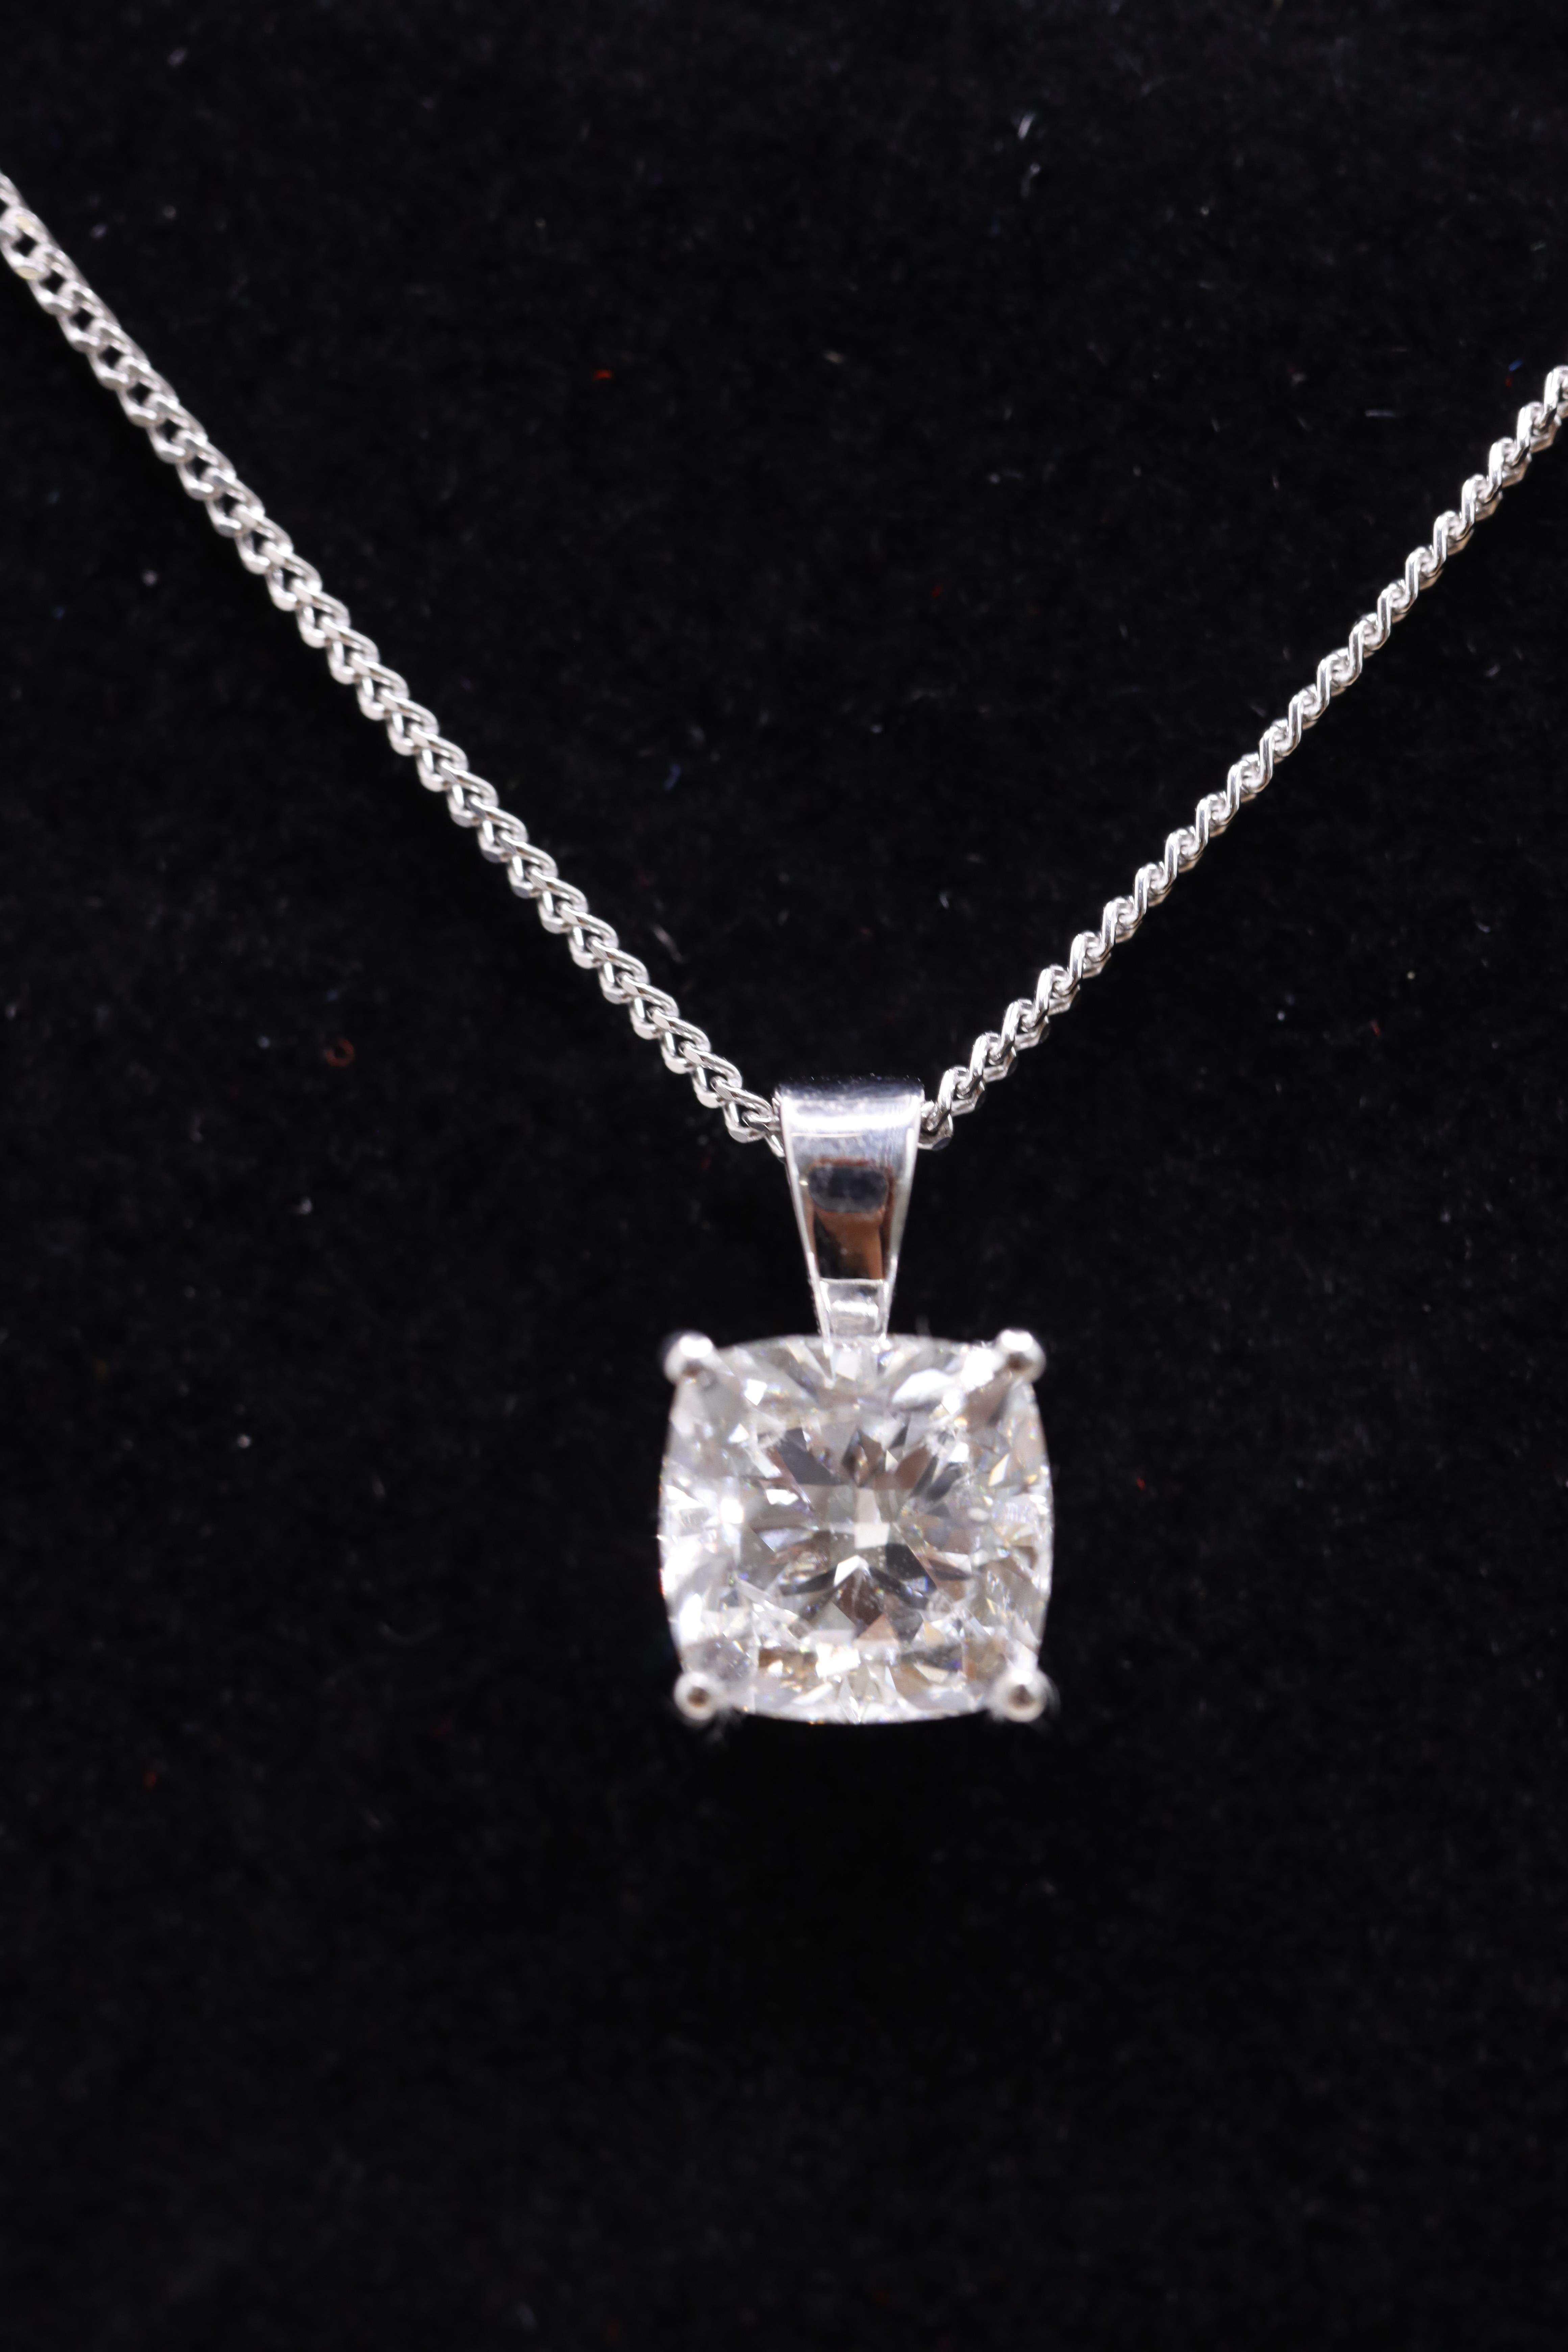 Cushion Cut Diamond 1.50 Carat D Colour VVS2 Clarity -Necklace Pendant -18kt White Gold -IGI - Image 2 of 3